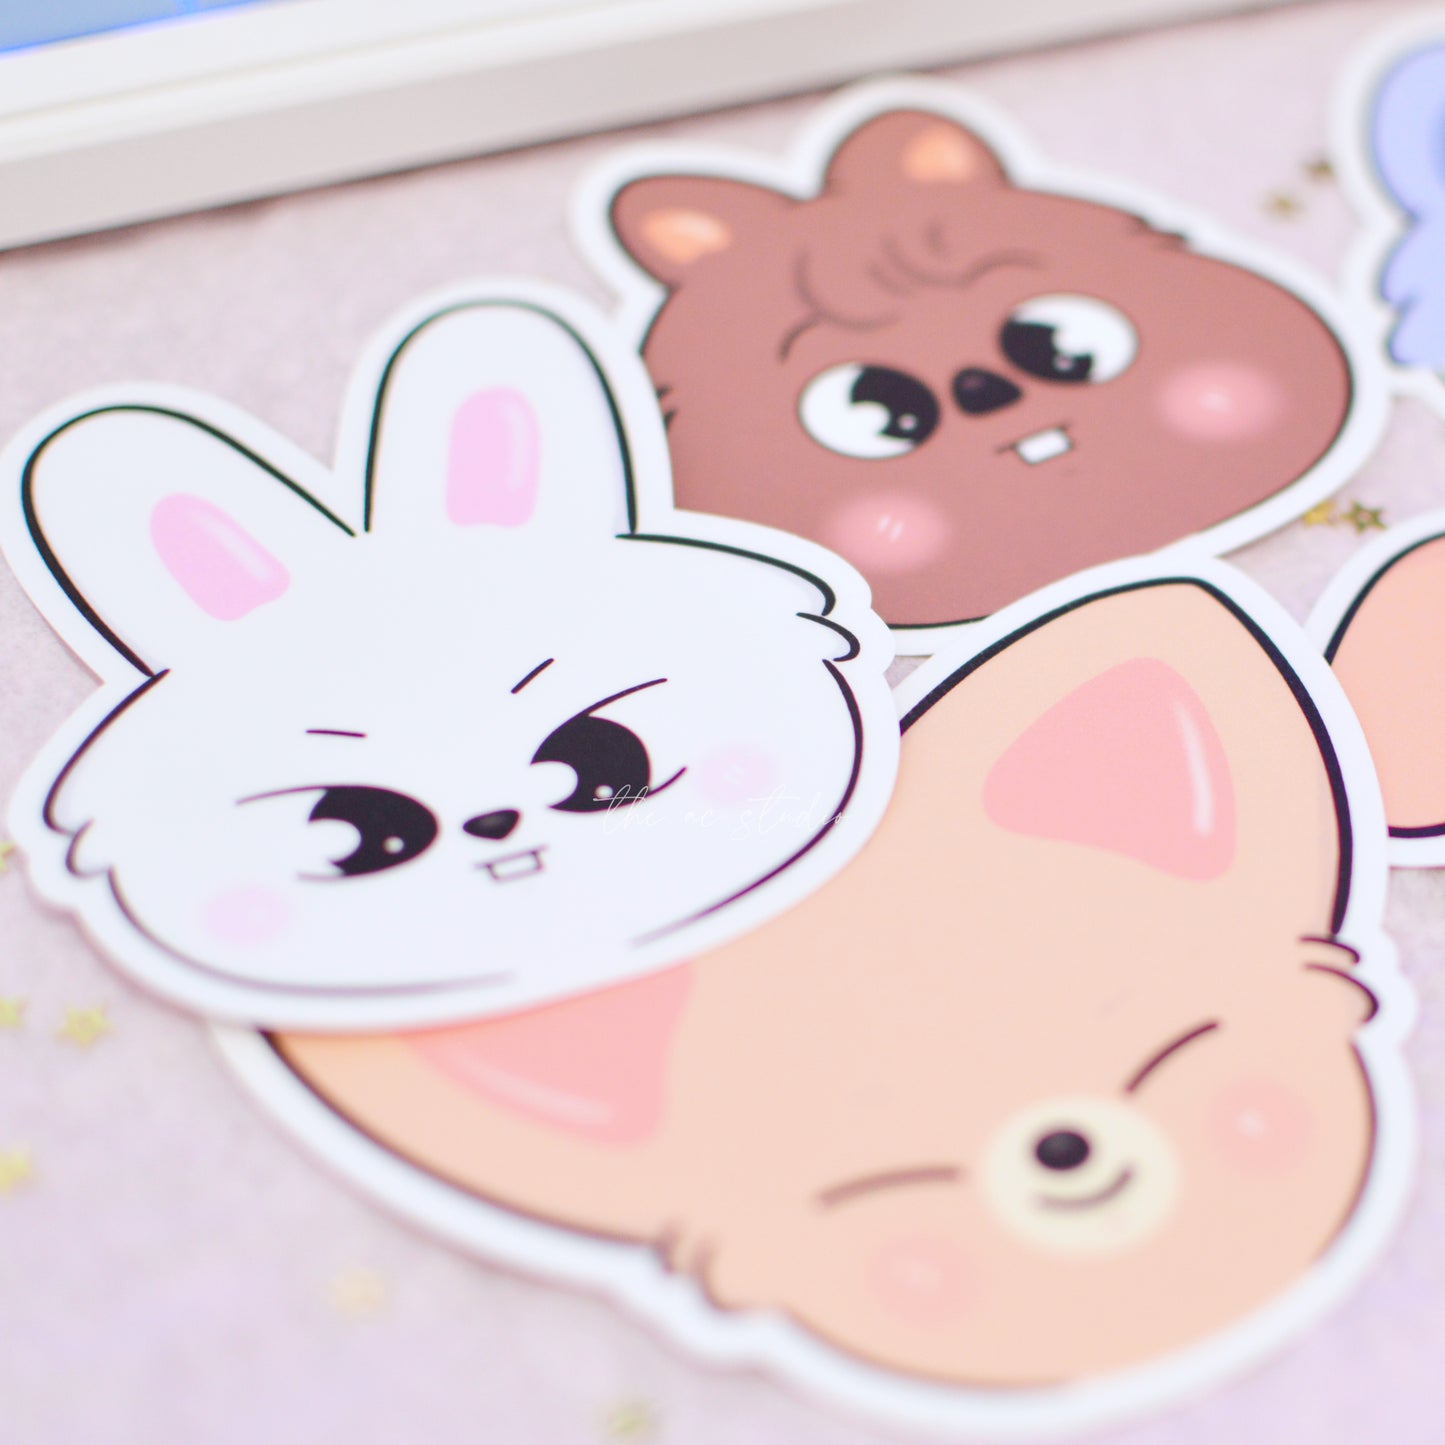 STAY Bunny Sticker